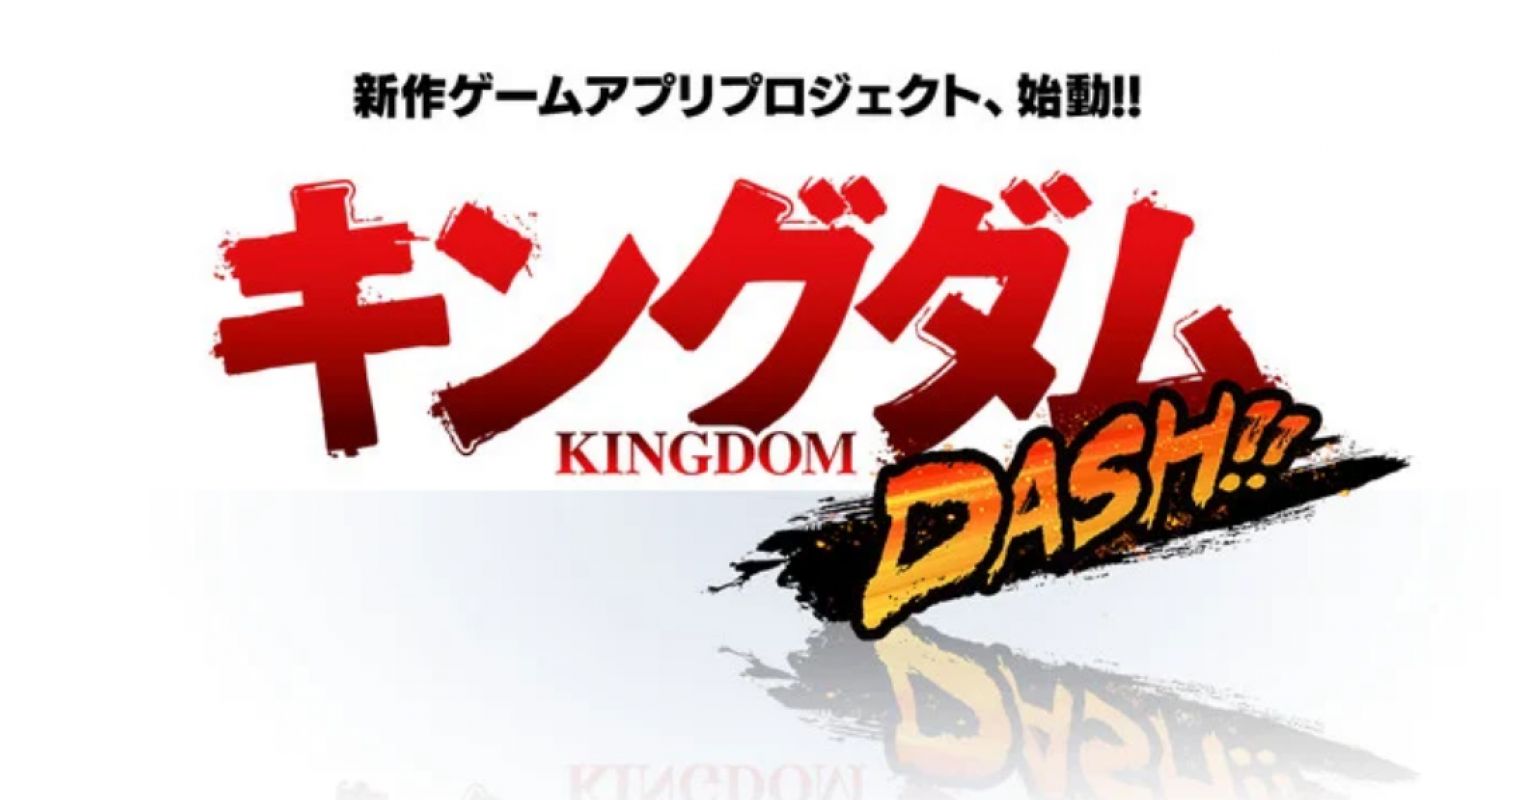 Un nouveau jeu mobile annoncé pour le manga Kingdom ! 